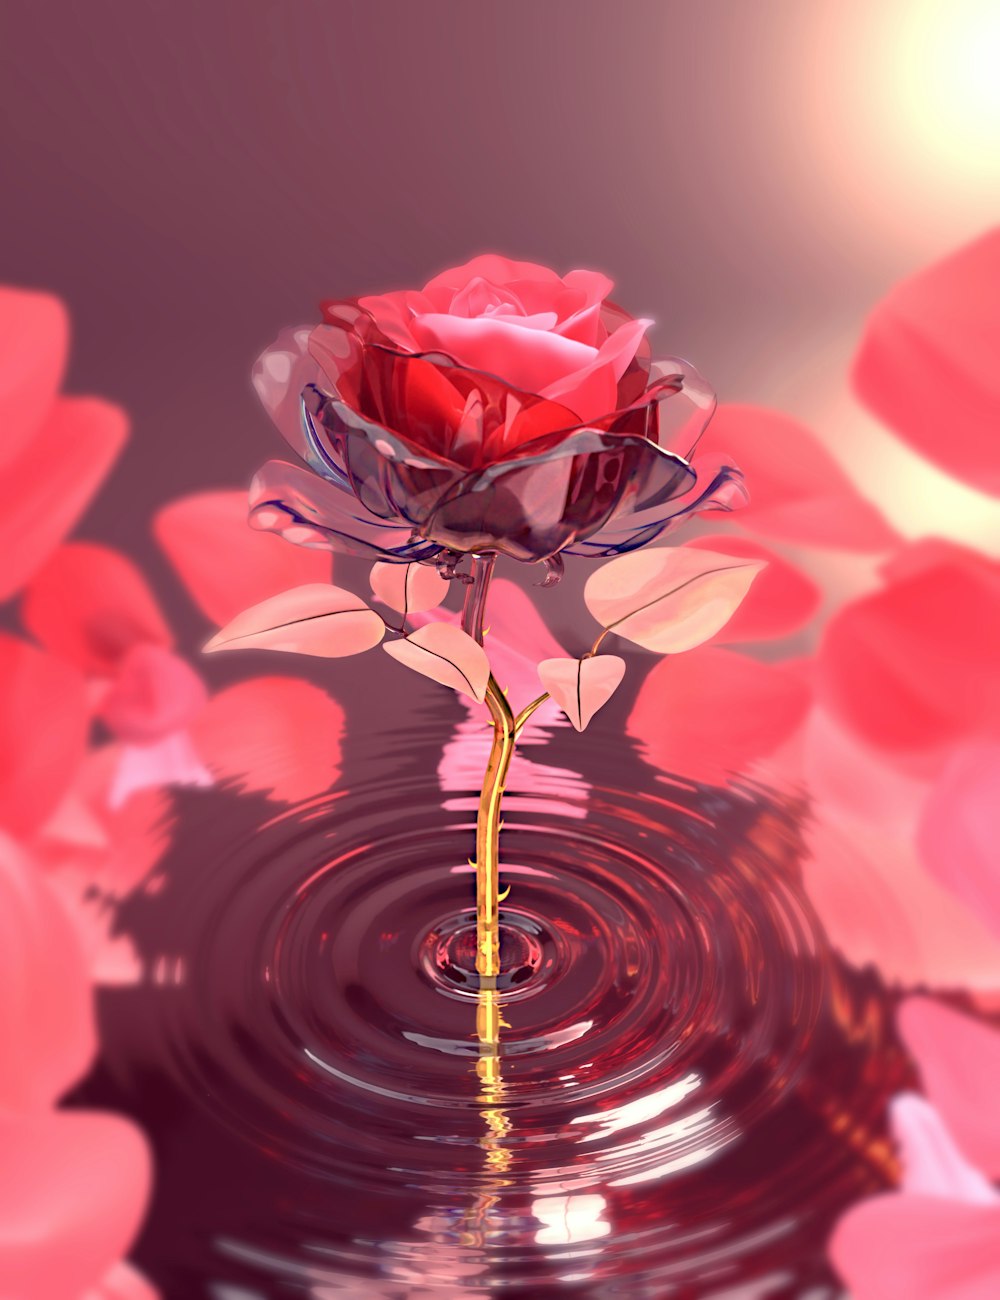 Una rosa roja flotando sobre un cuerpo de agua